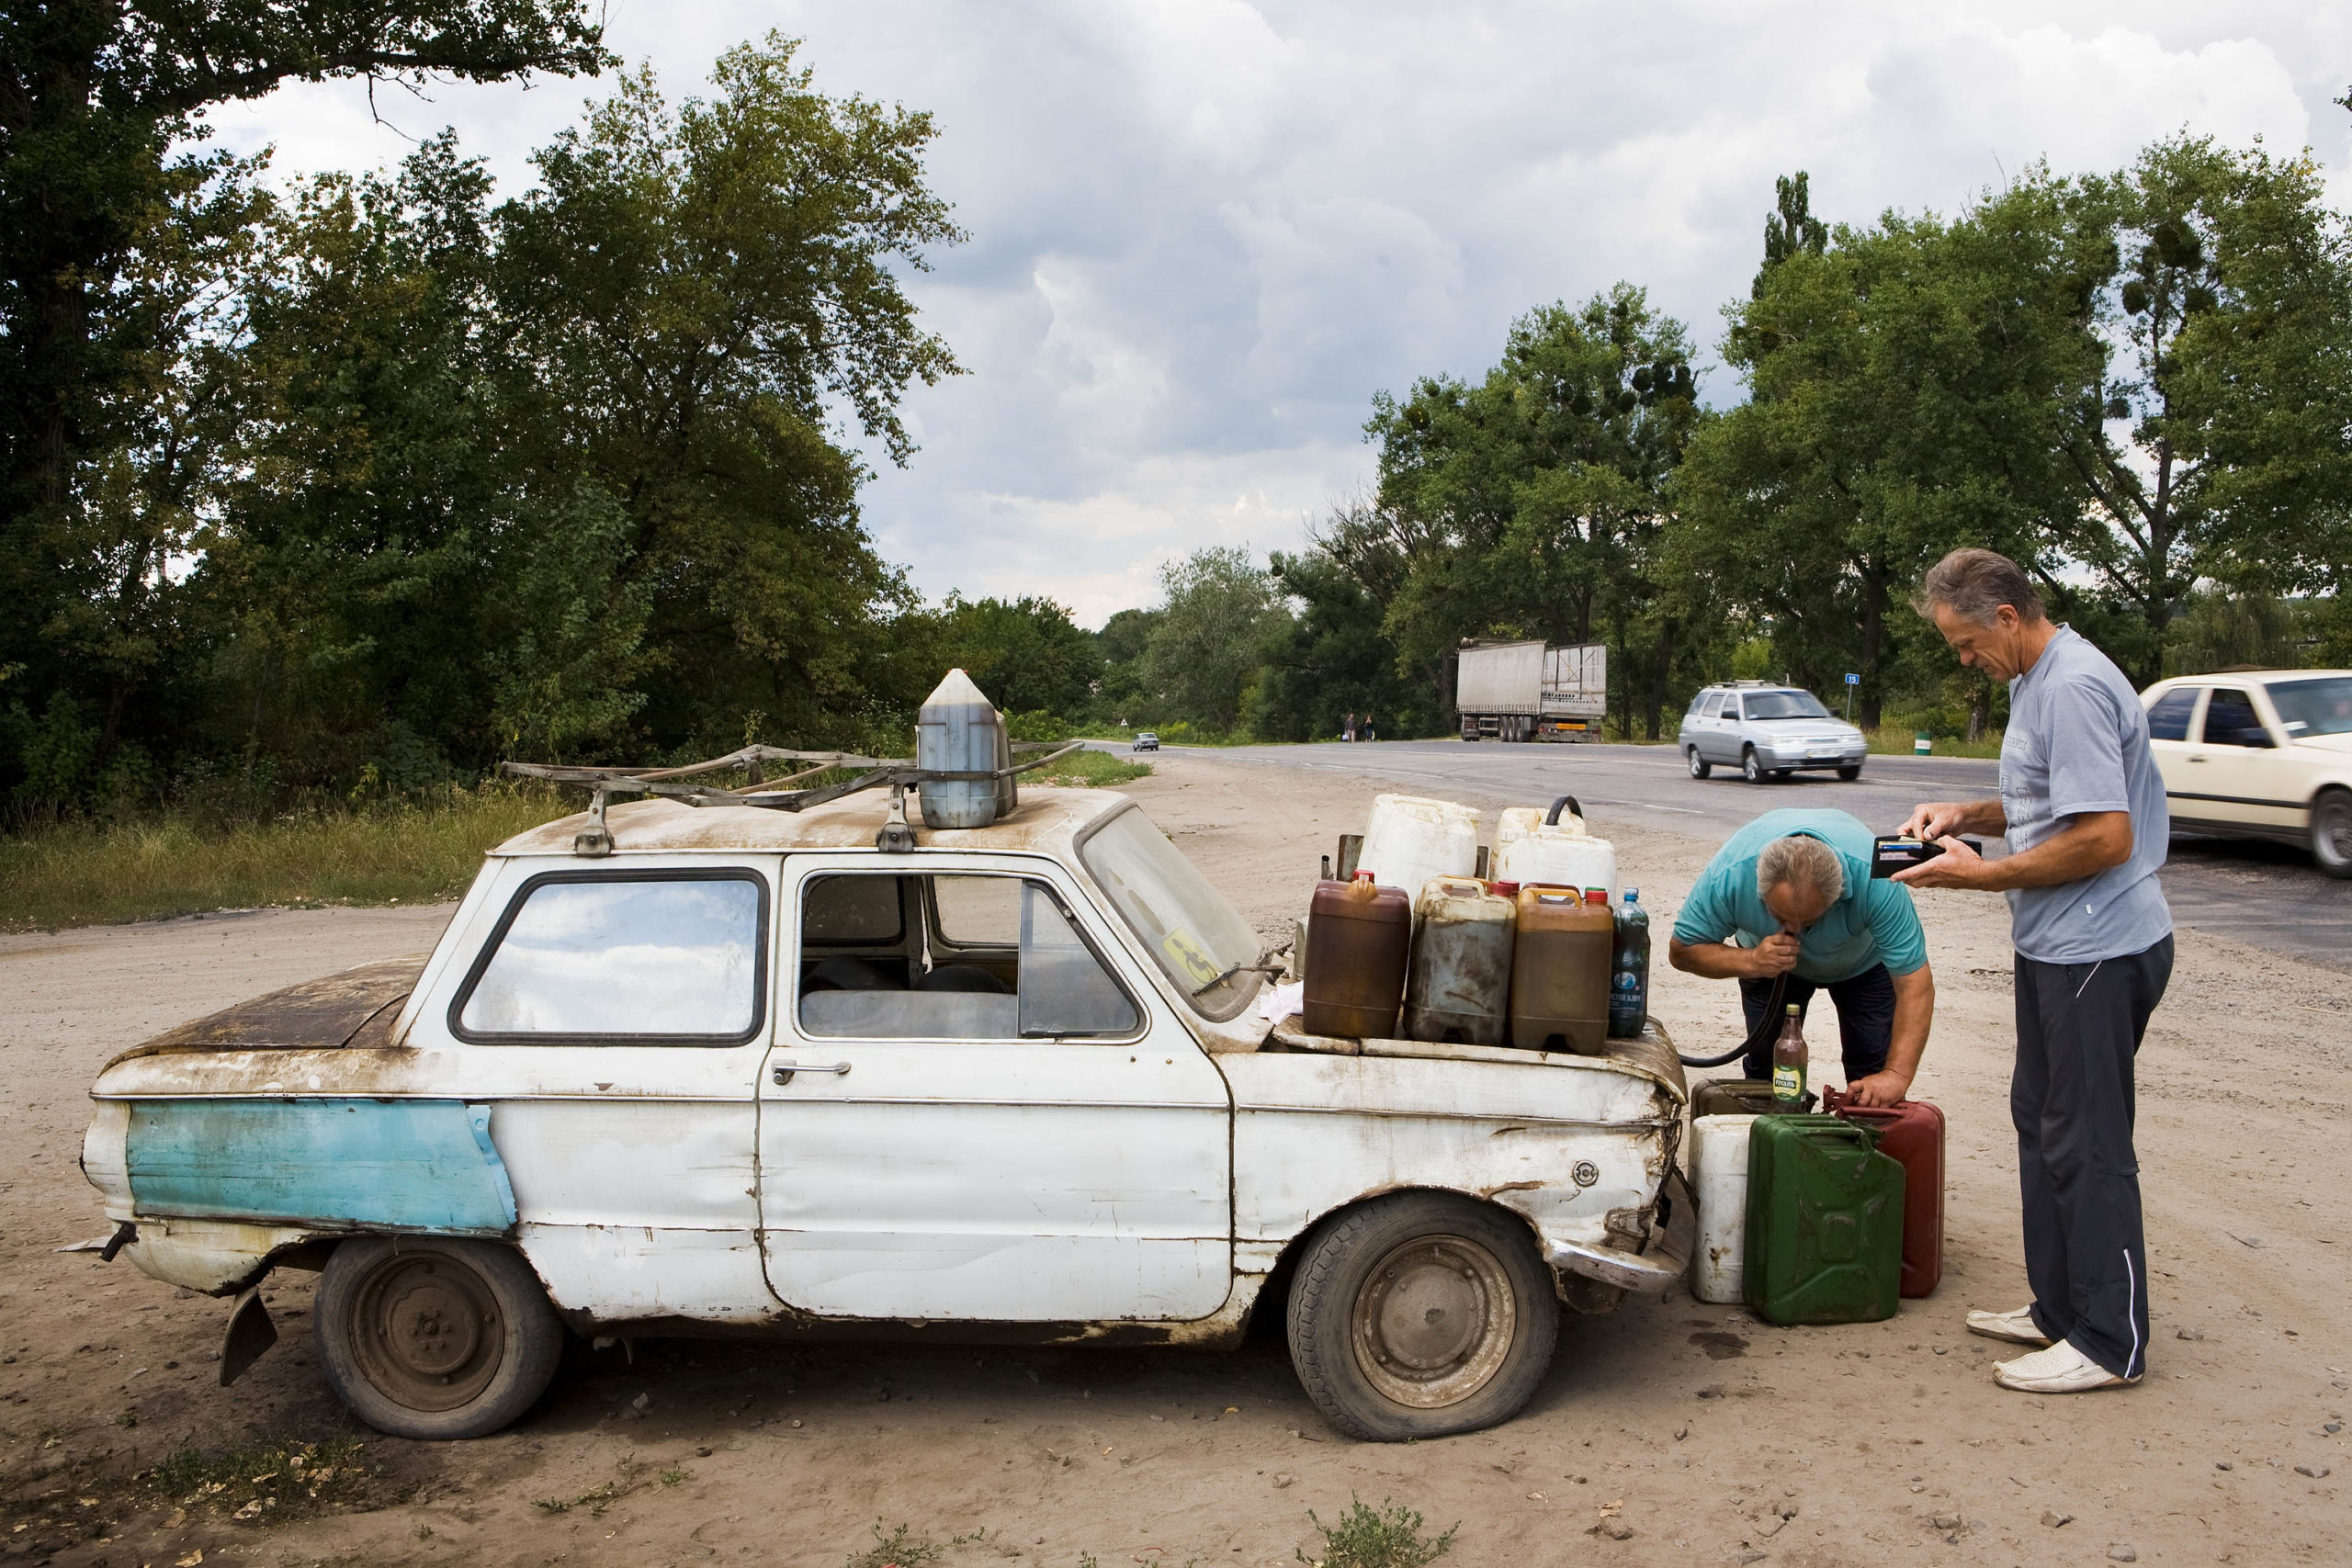 Zaporozhets; Karatsjivka, Ukraine (Leonti Michailovitsj sells stolen diesel from his car)